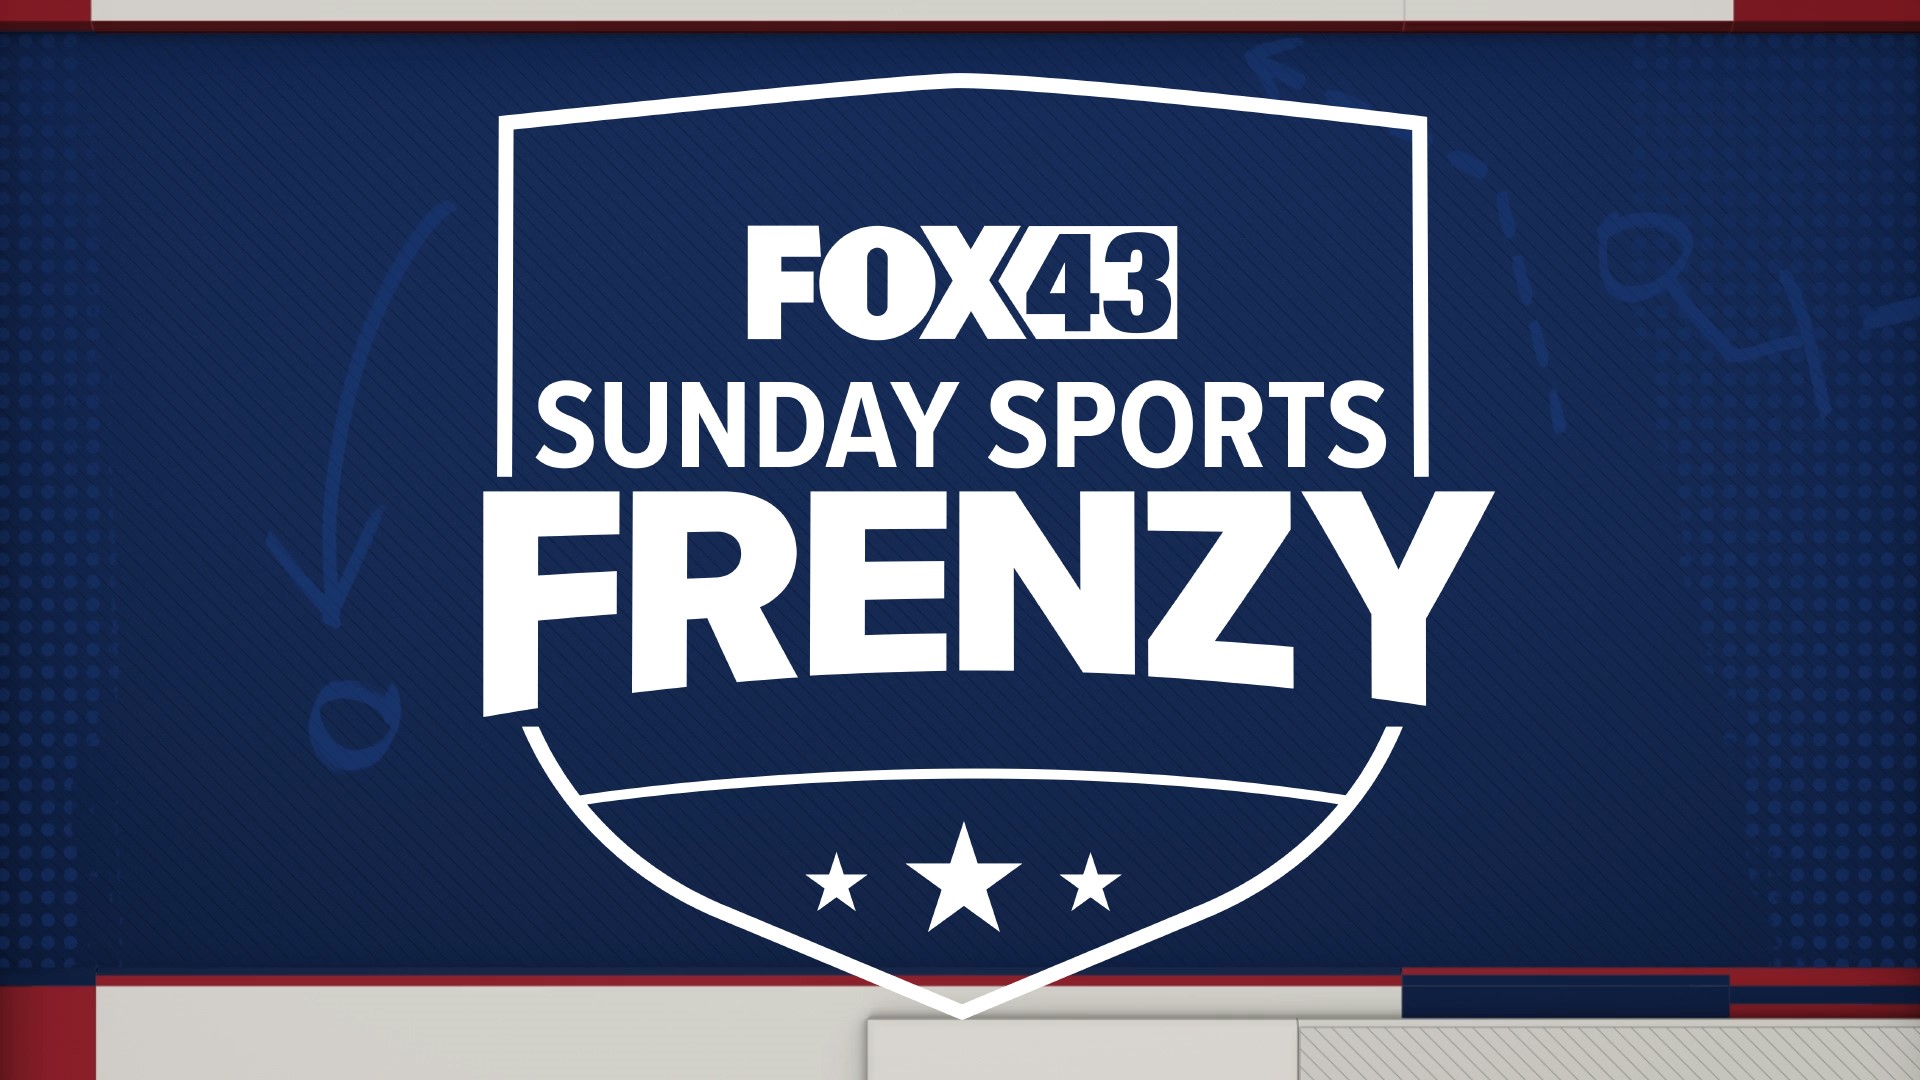 FOX43 SUNDAY SPORTS FRENZY to nowy program na żywo zaplanowany na niedzielne wieczory o 23:00, bezpośrednio po FOX43 NEWS AT TEN.